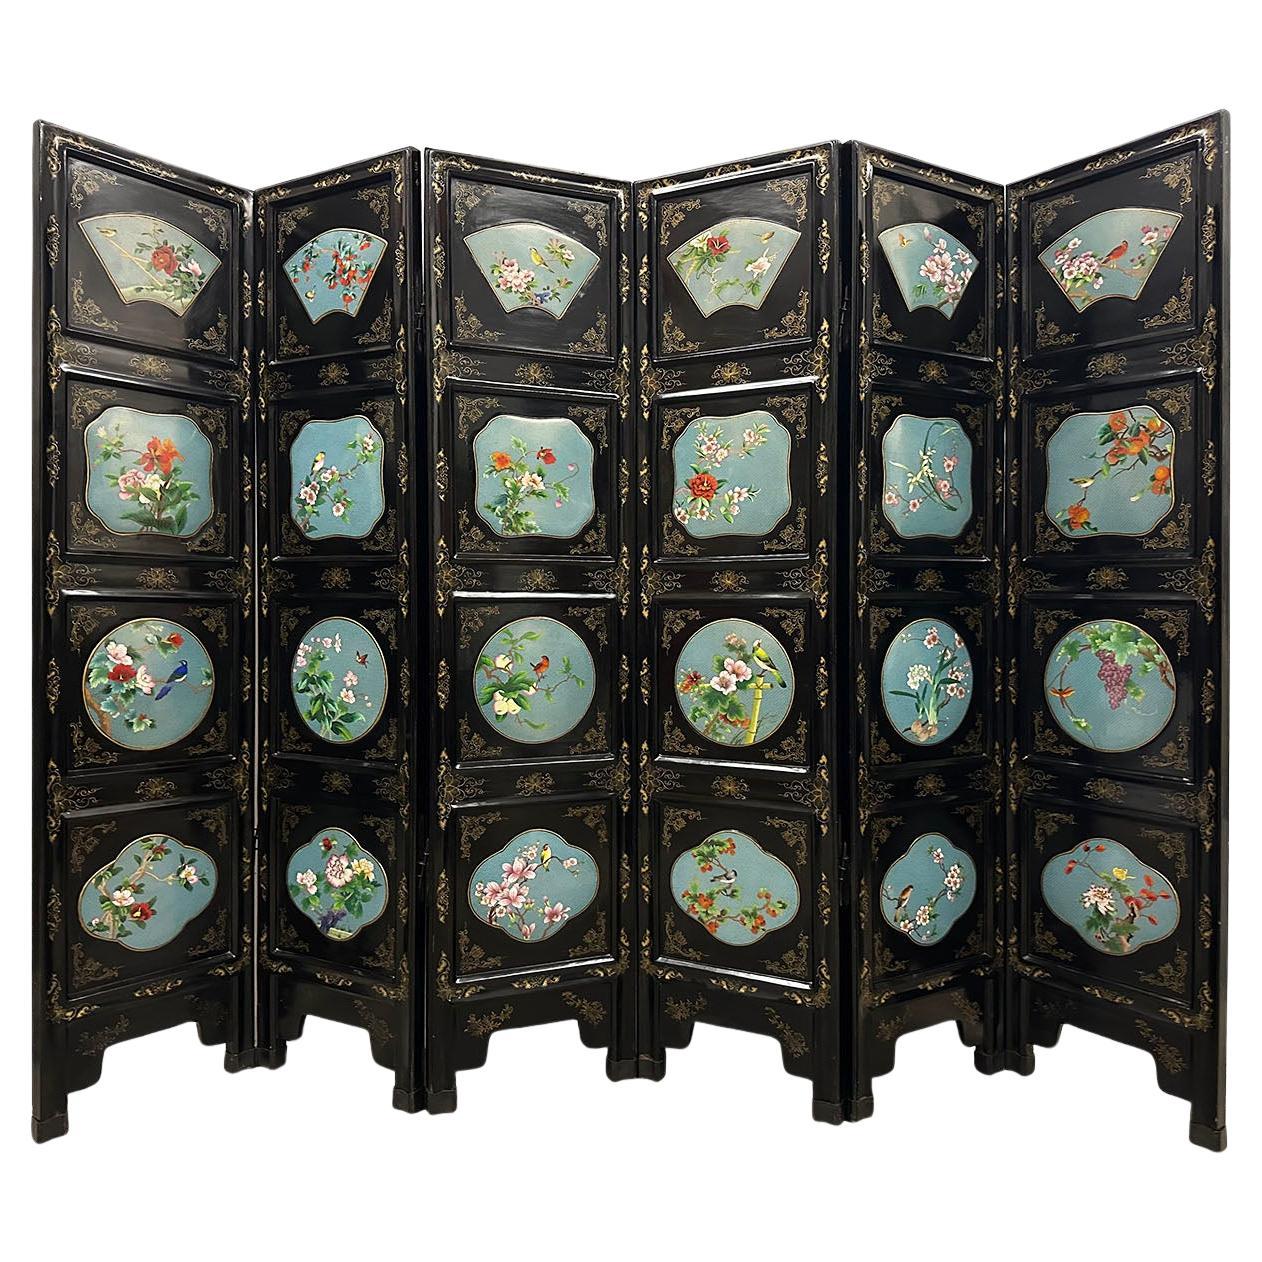 Chinesischer klappbarer Raumteiler des frühen 20. Jahrhunderts mit Cloisonné-Paneelen